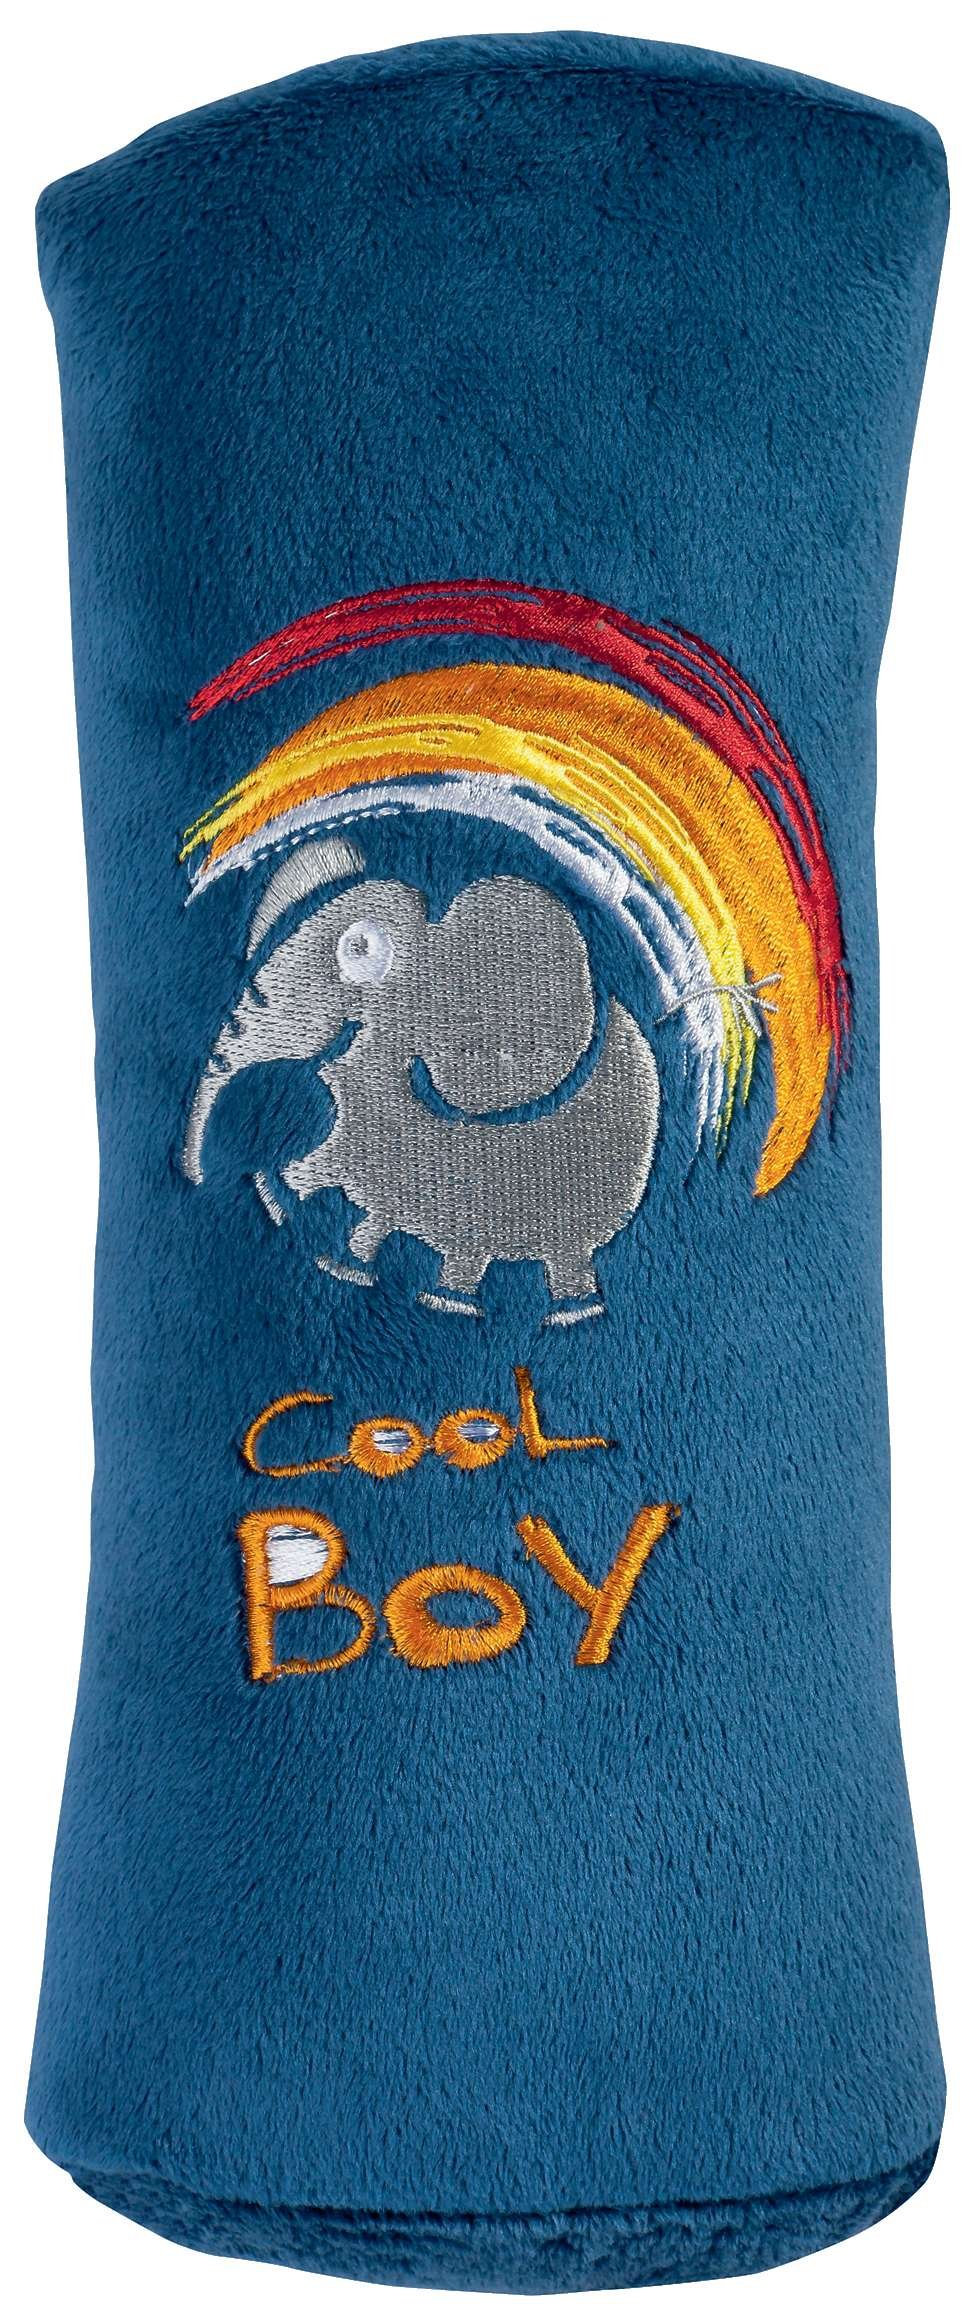 Slaapkussen Cool Boy blauw vanaf 5 jaar